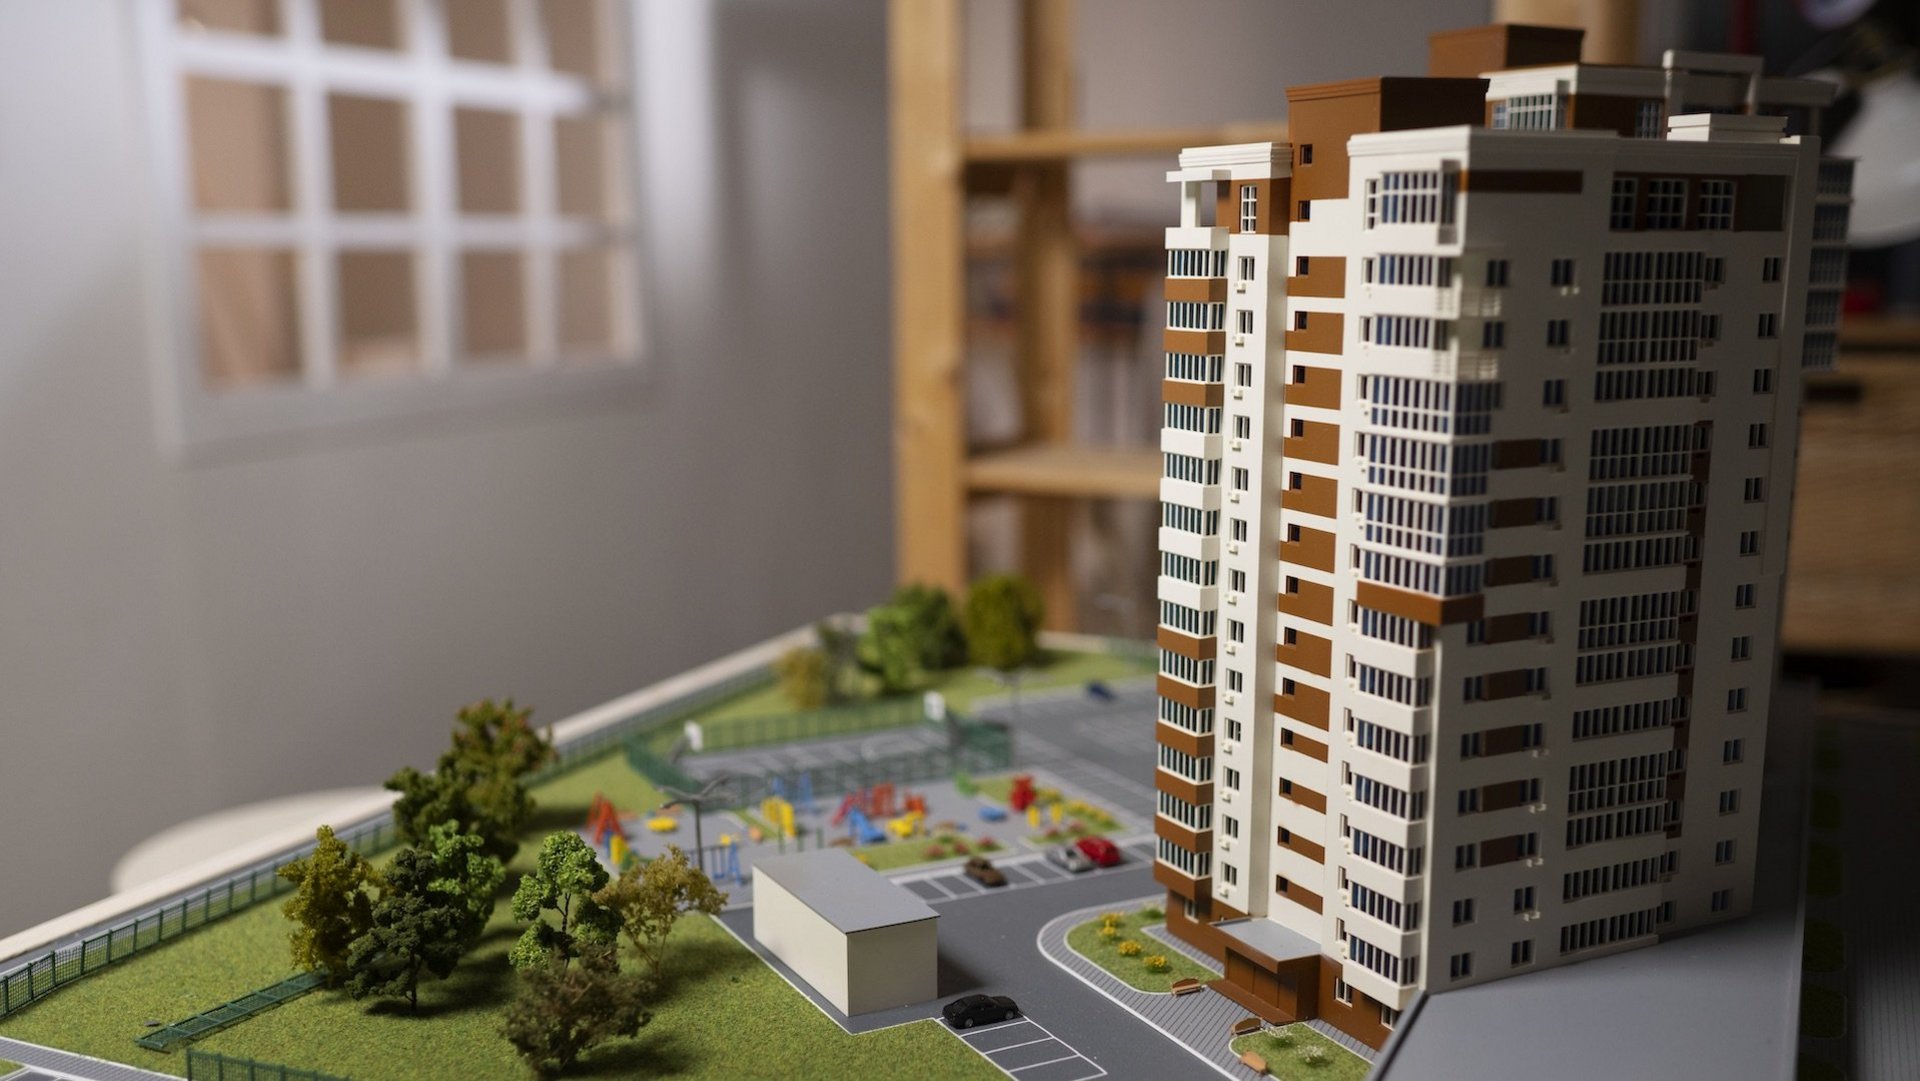 Das Bild zeigt eine Modellbau-Stadt.